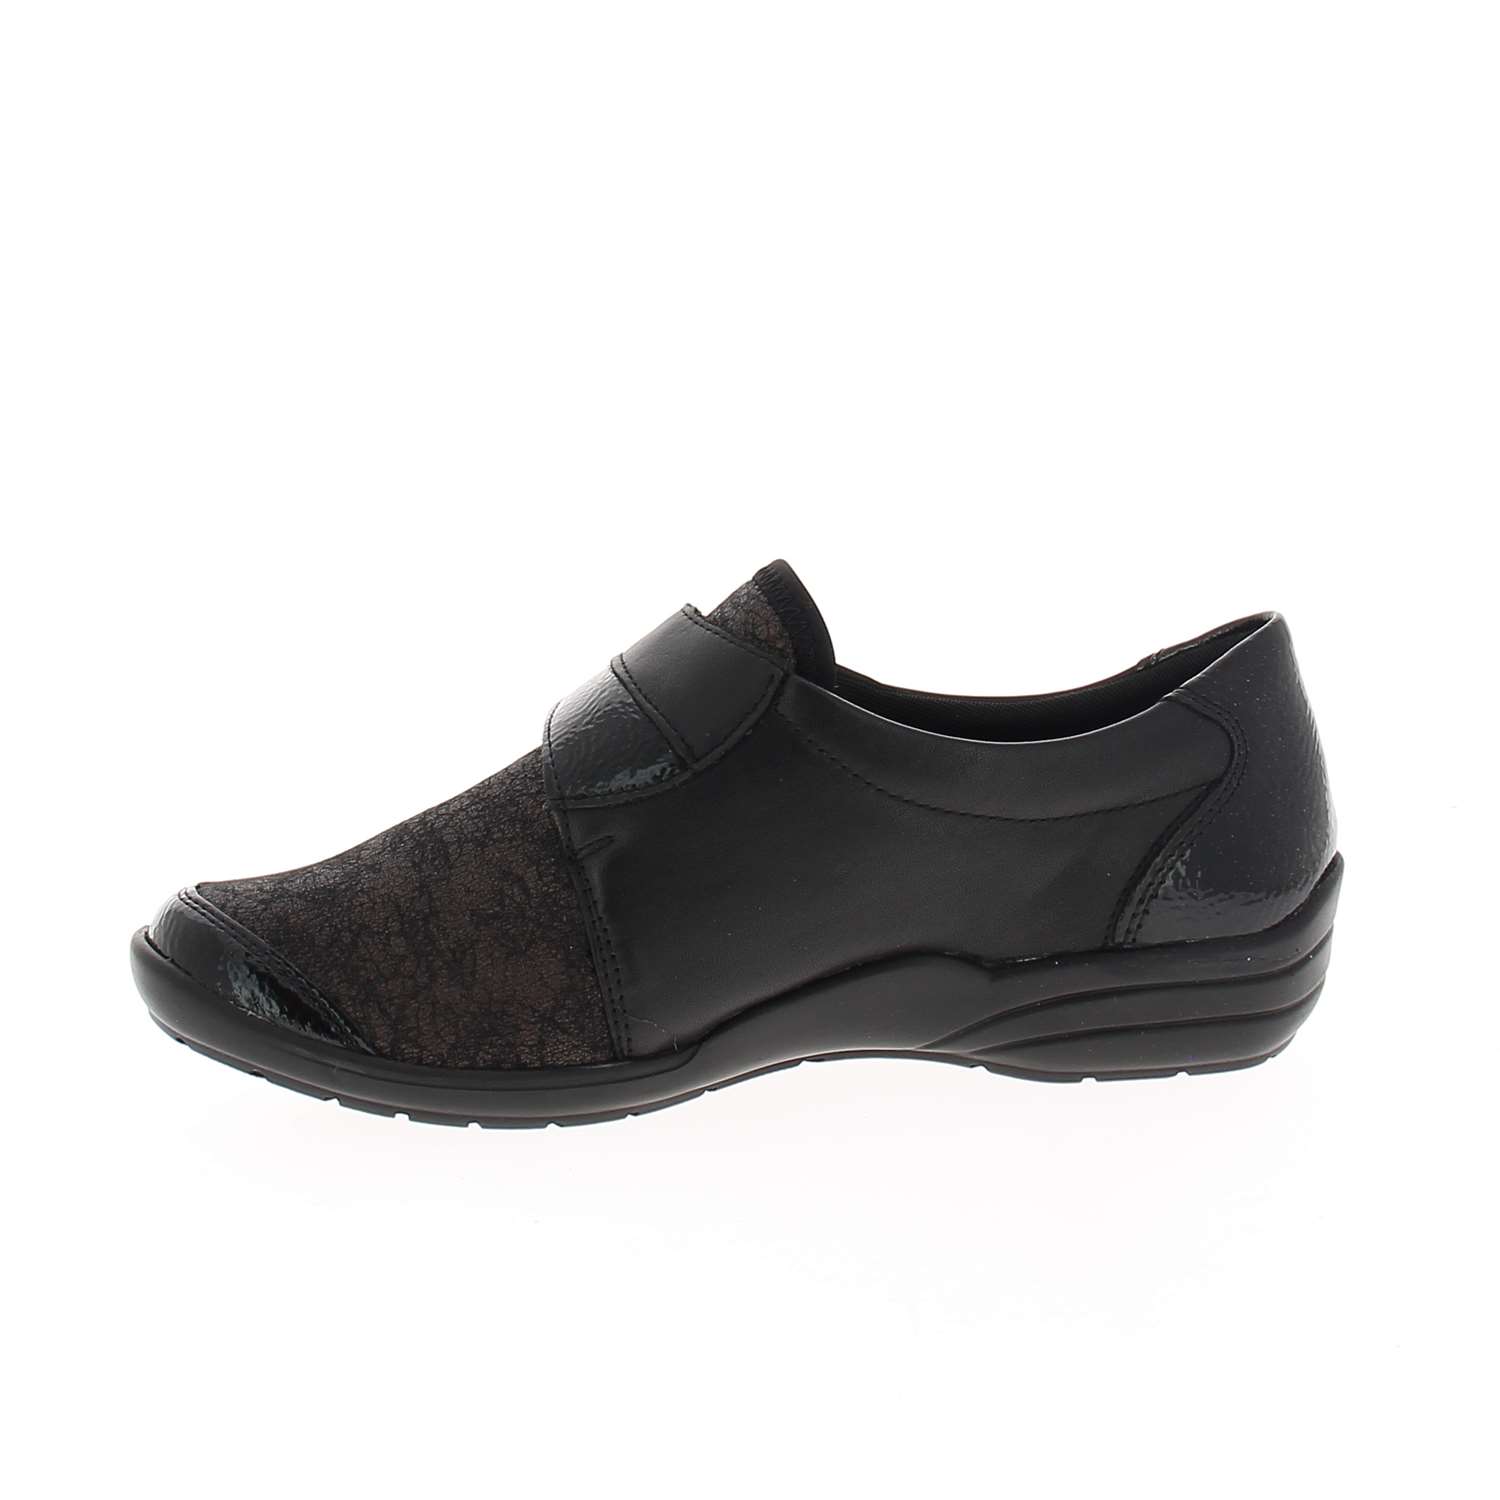 05 - RELIO - REMONTE - Chaussures à lacets - Textile